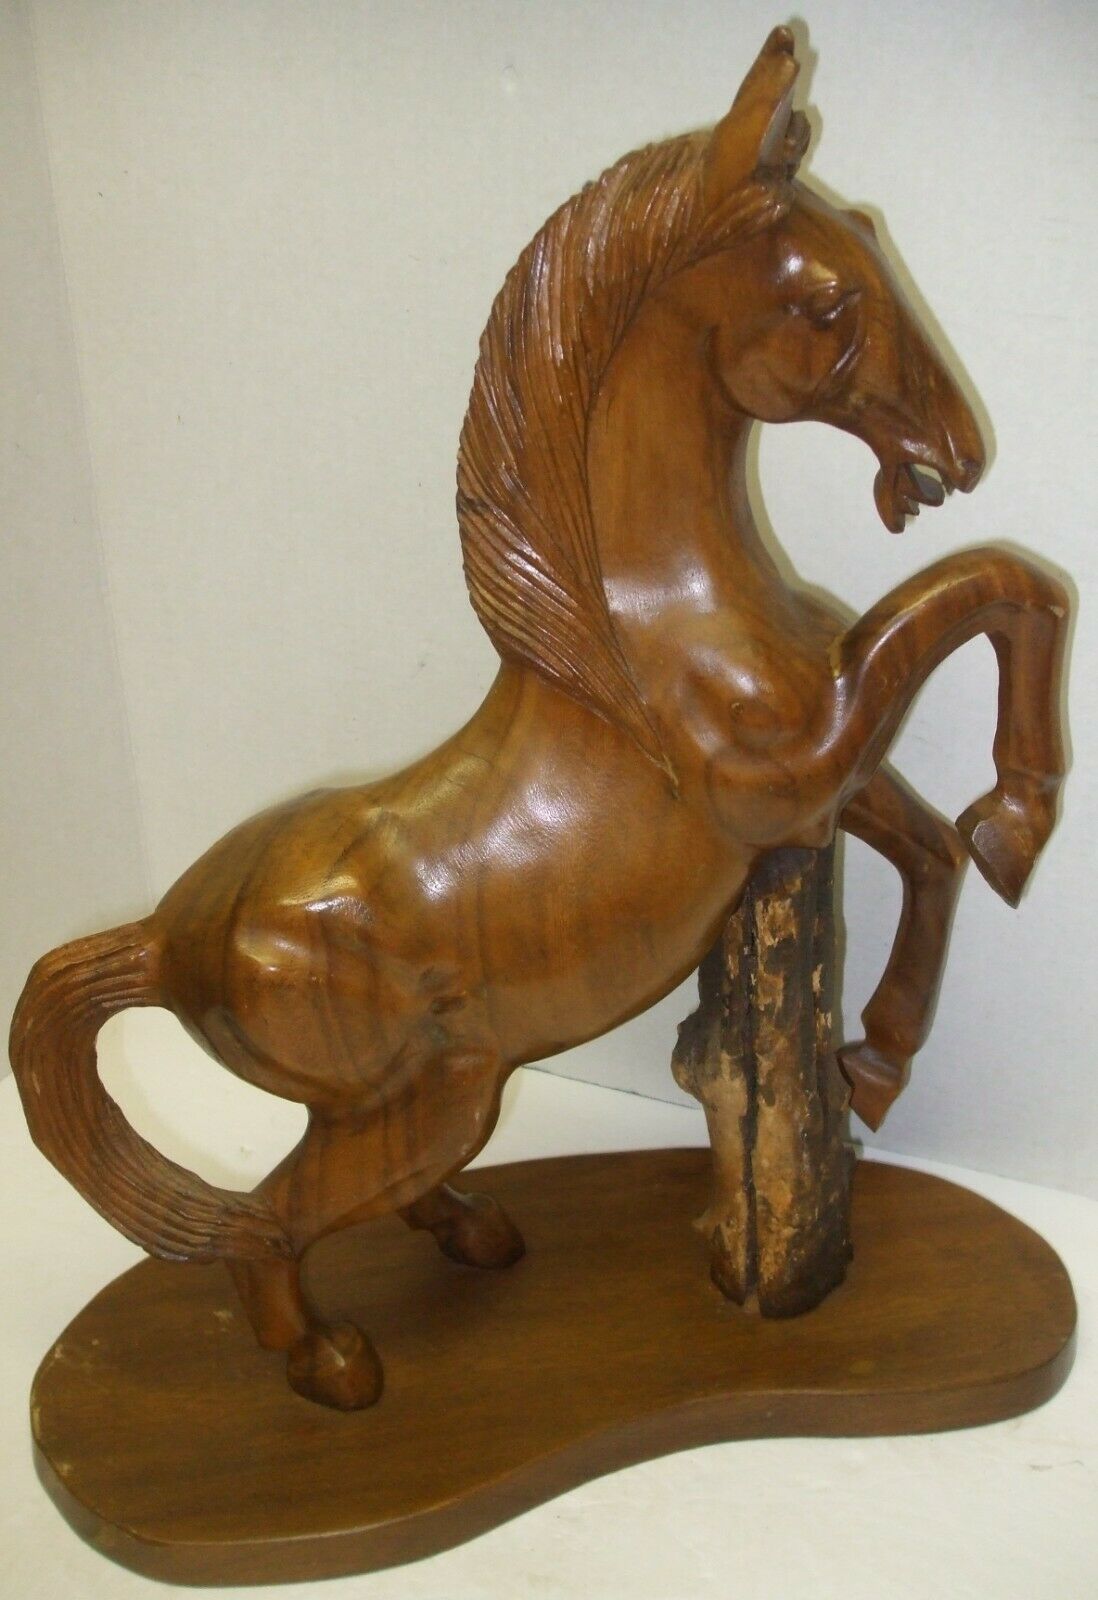 Wooden Horse Sculpture 20"